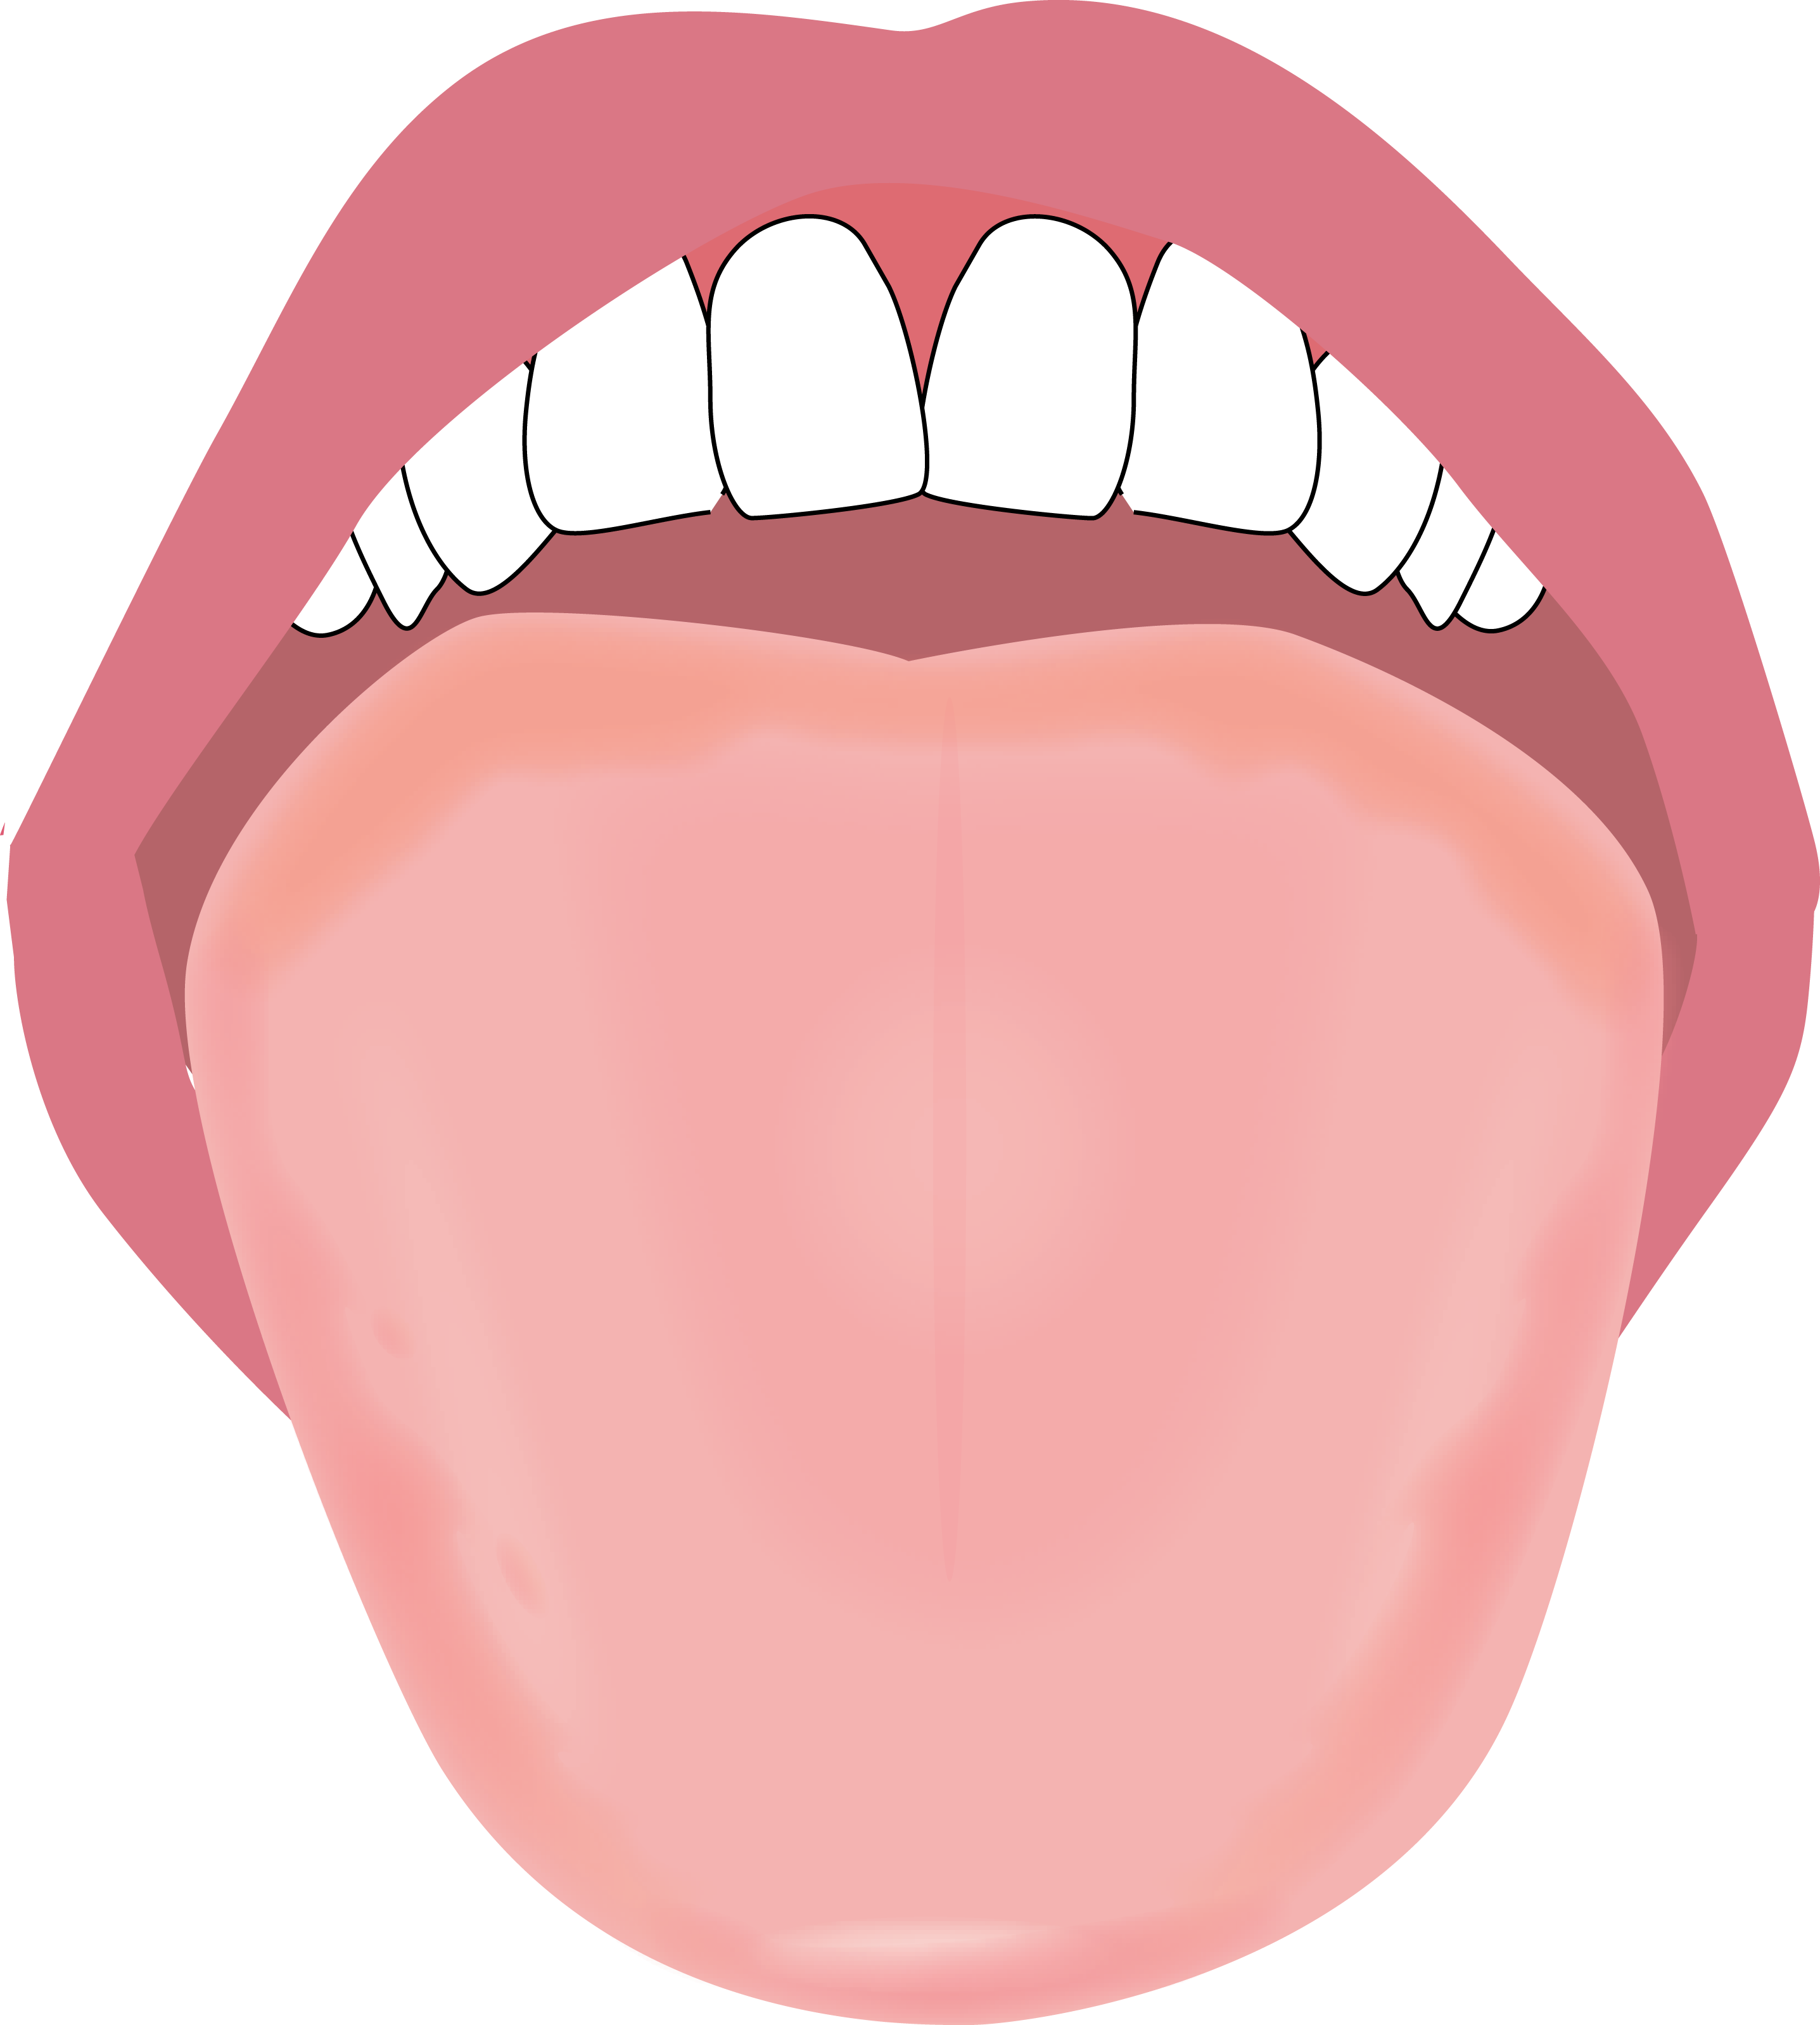 舌のイラスト描きました やましろ歯科口腔外科 口腔外科 口腔内科 福岡で親知らずの抜歯 ドライマウス 睡眠時無呼吸症候群 口腔 がん健診のことならやましろ歯科口腔外科へ 日本口腔外科学会認定専門医が治療します